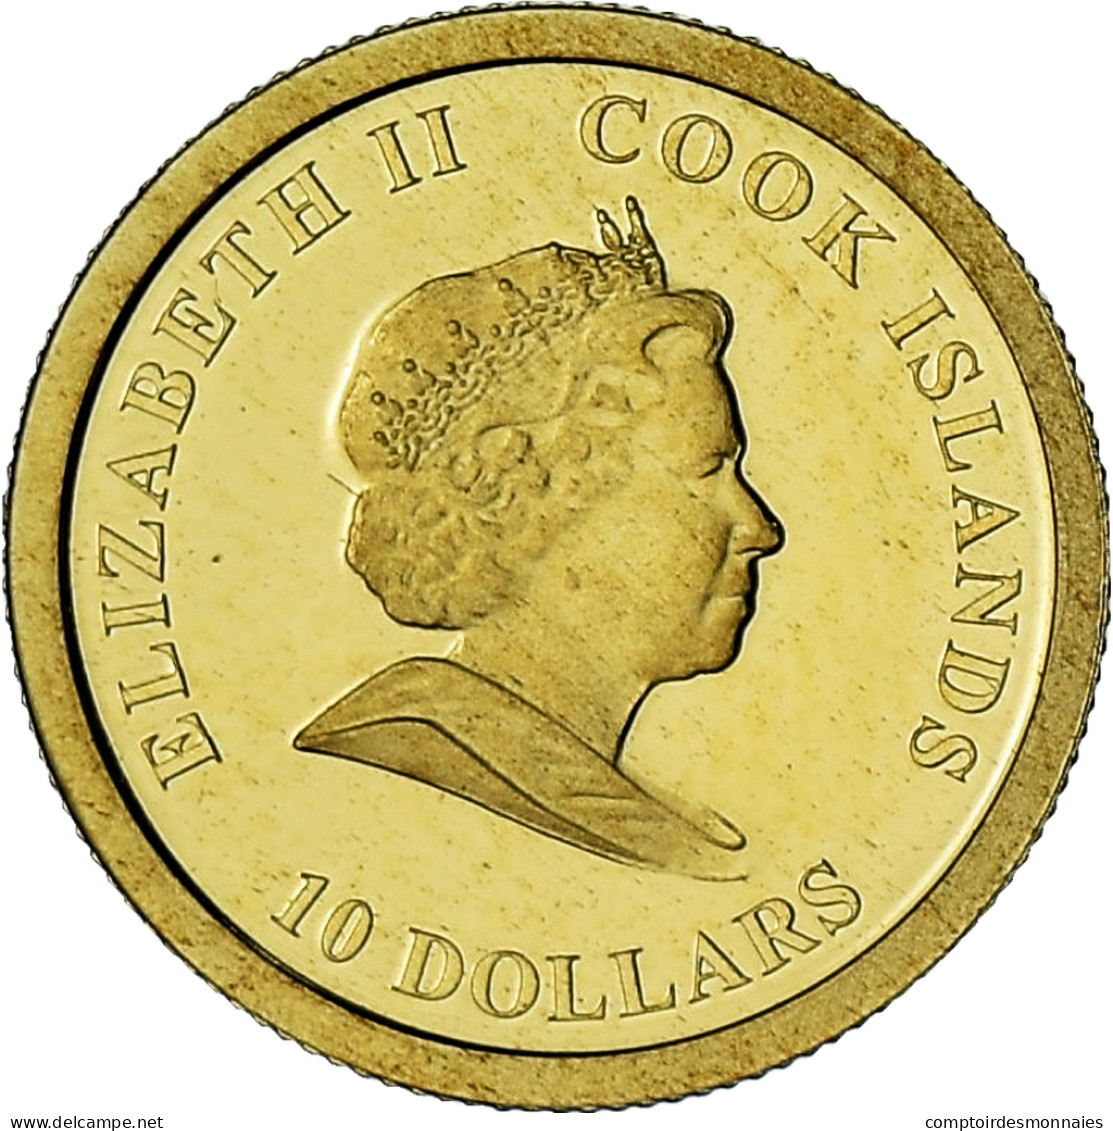 Îles Cook, Elizabeth II, James Cook, 10 Dollars, 2008, BE, FDC, Or - Cook